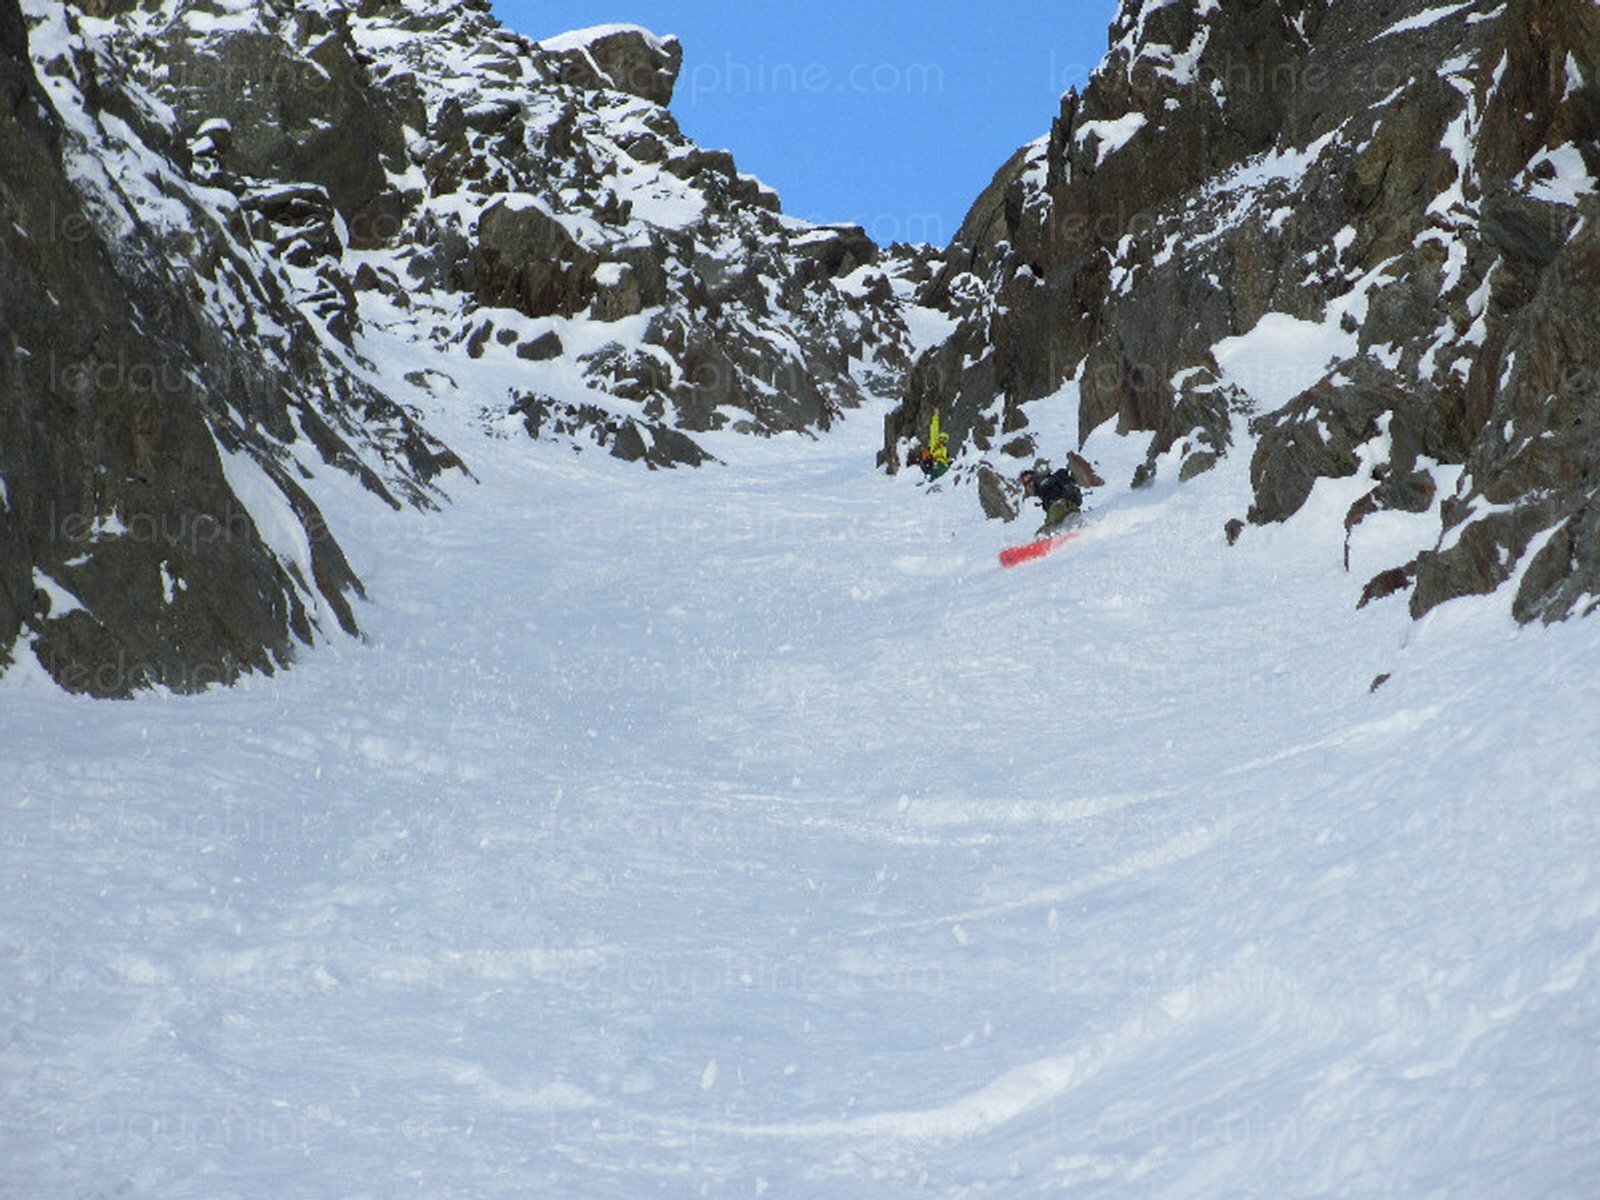 Спуск на сноуборде с Эгюий дю Легль (Aiguille de l